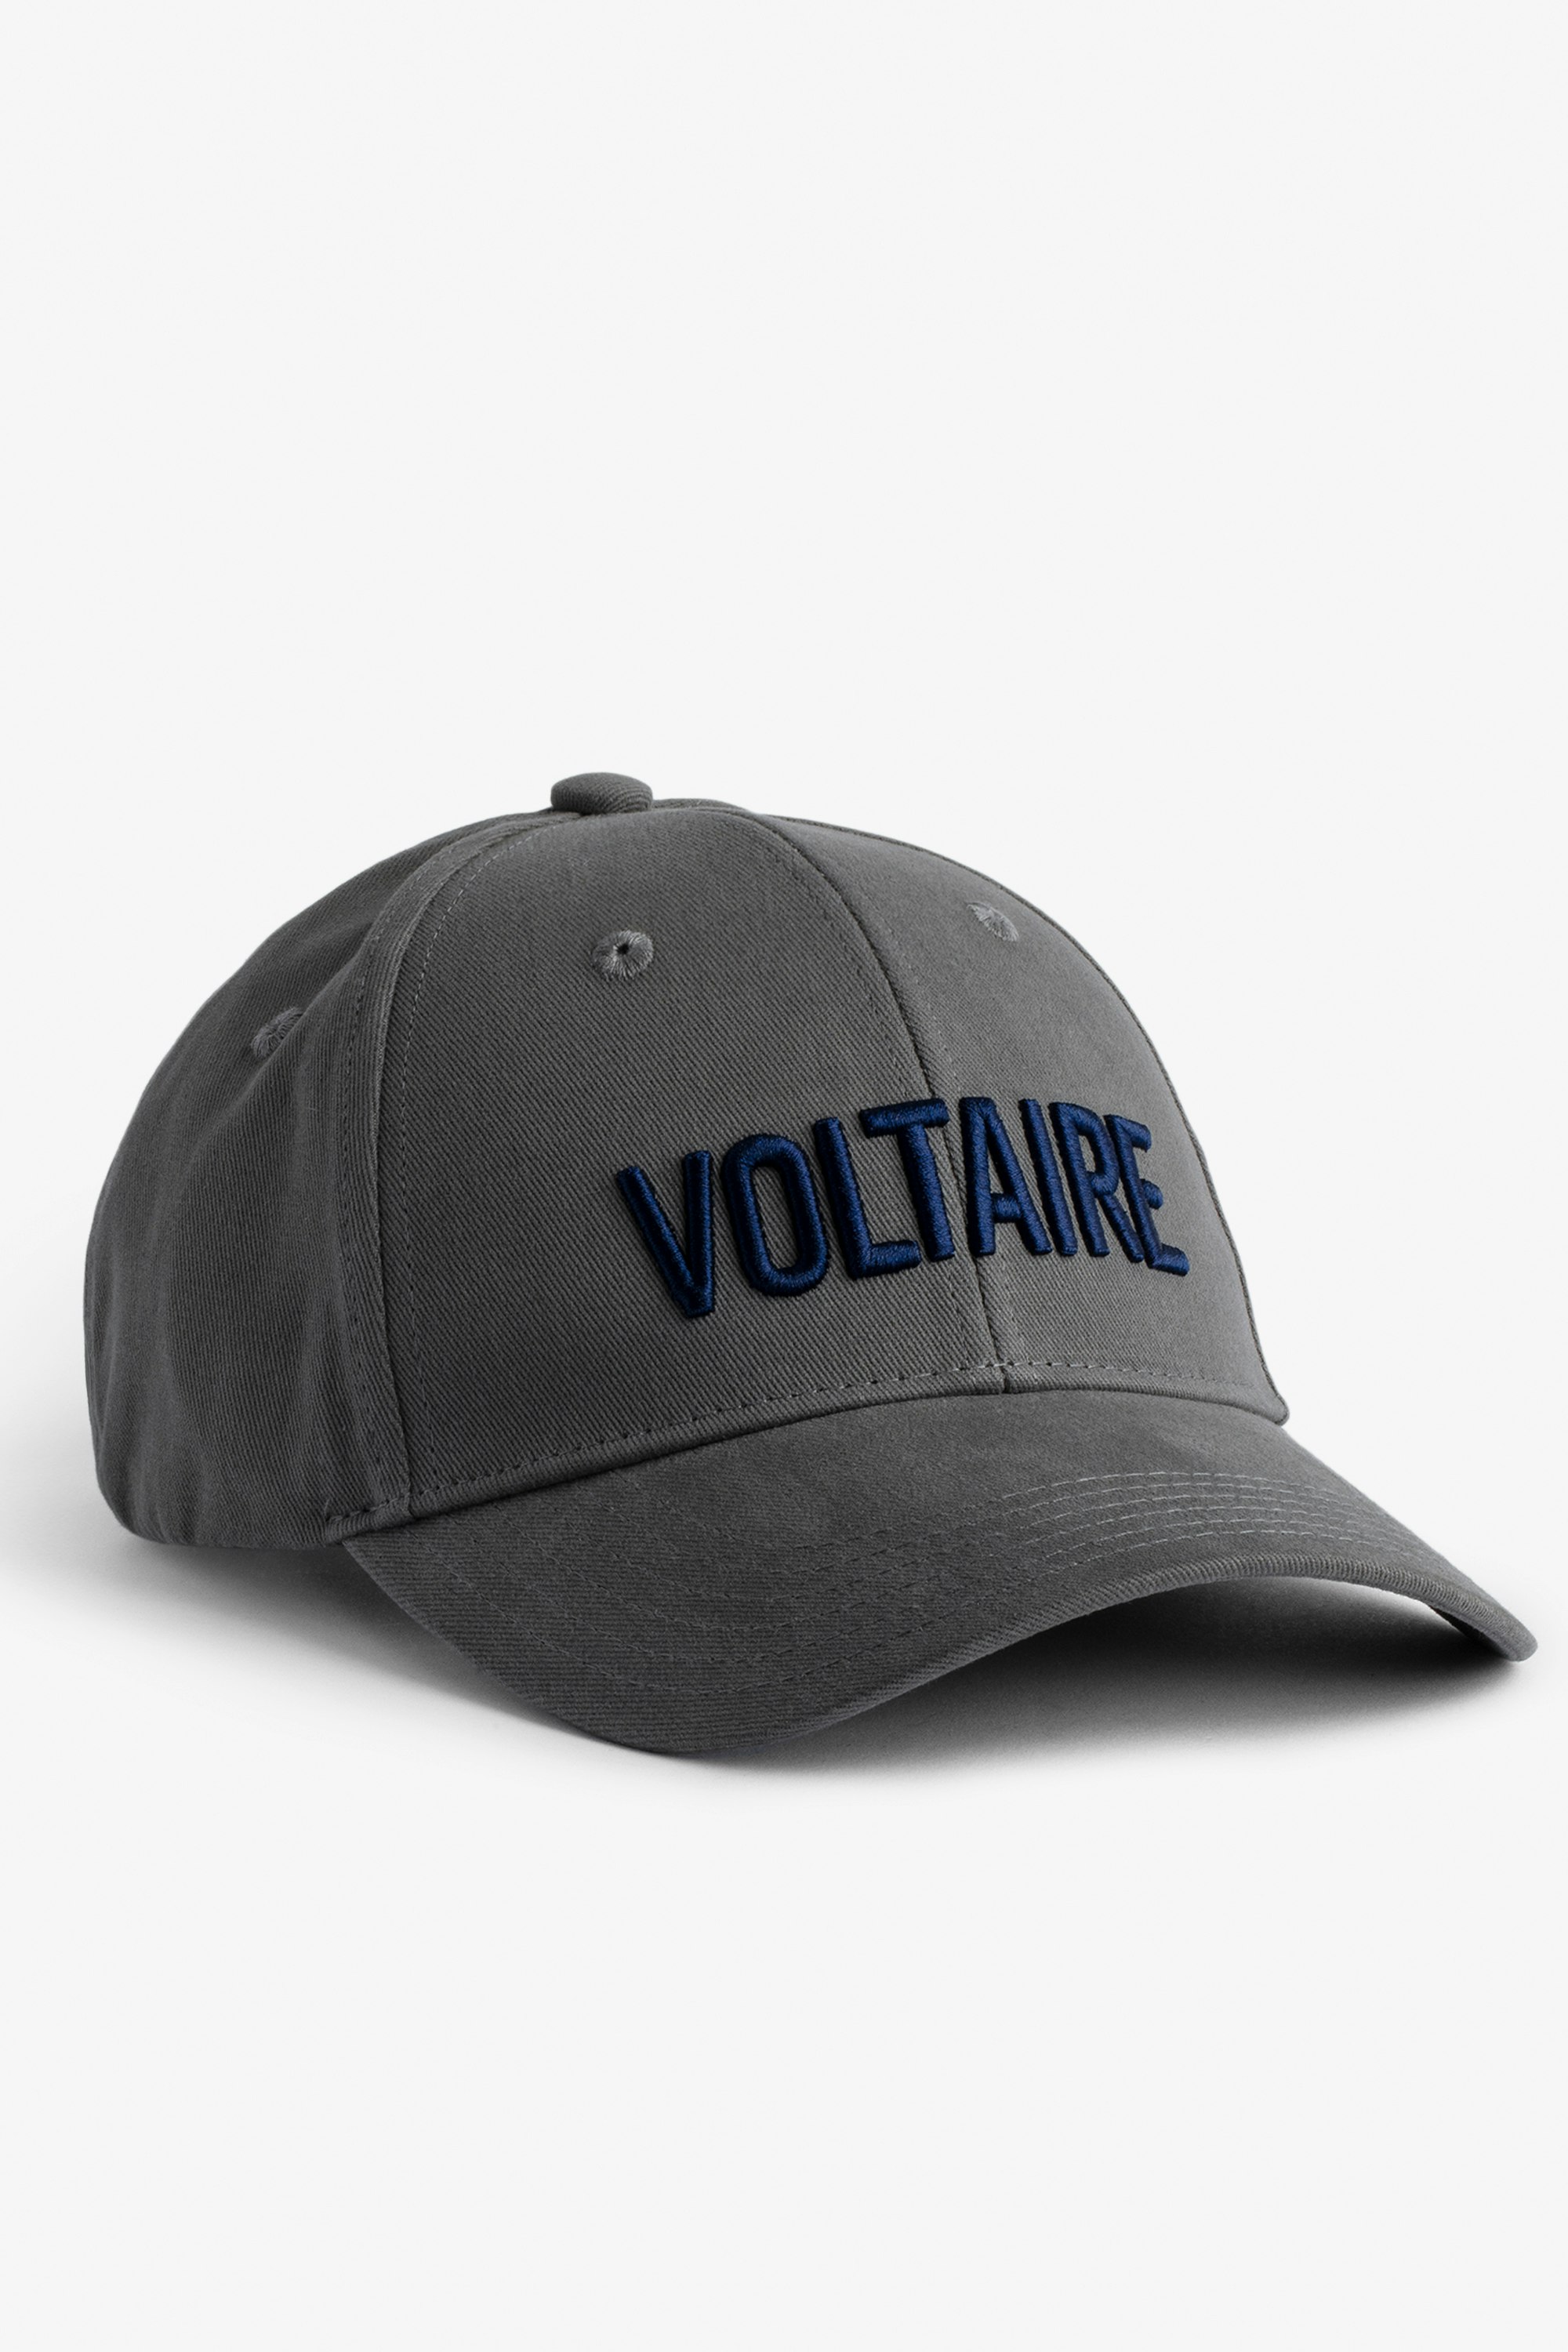 Cappellino Klelia Voltaire - Cappellino in cotone grigio con ricamo "Voltaire" - Uomo.